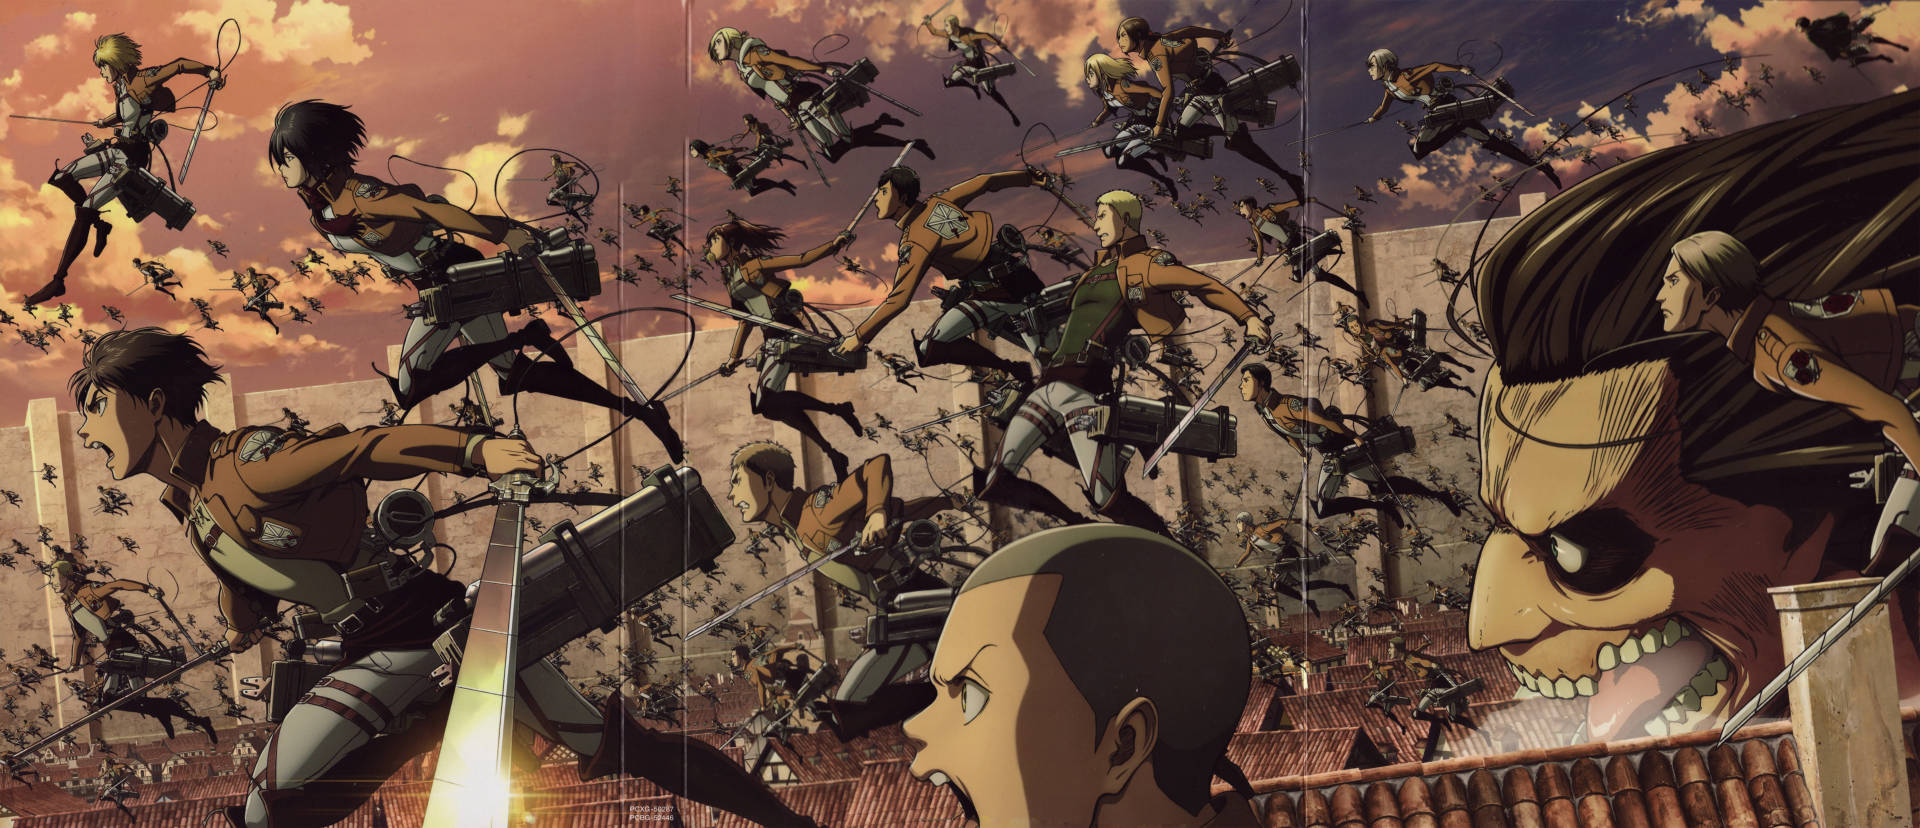 Epic 8k Anime Fight Wallpaper